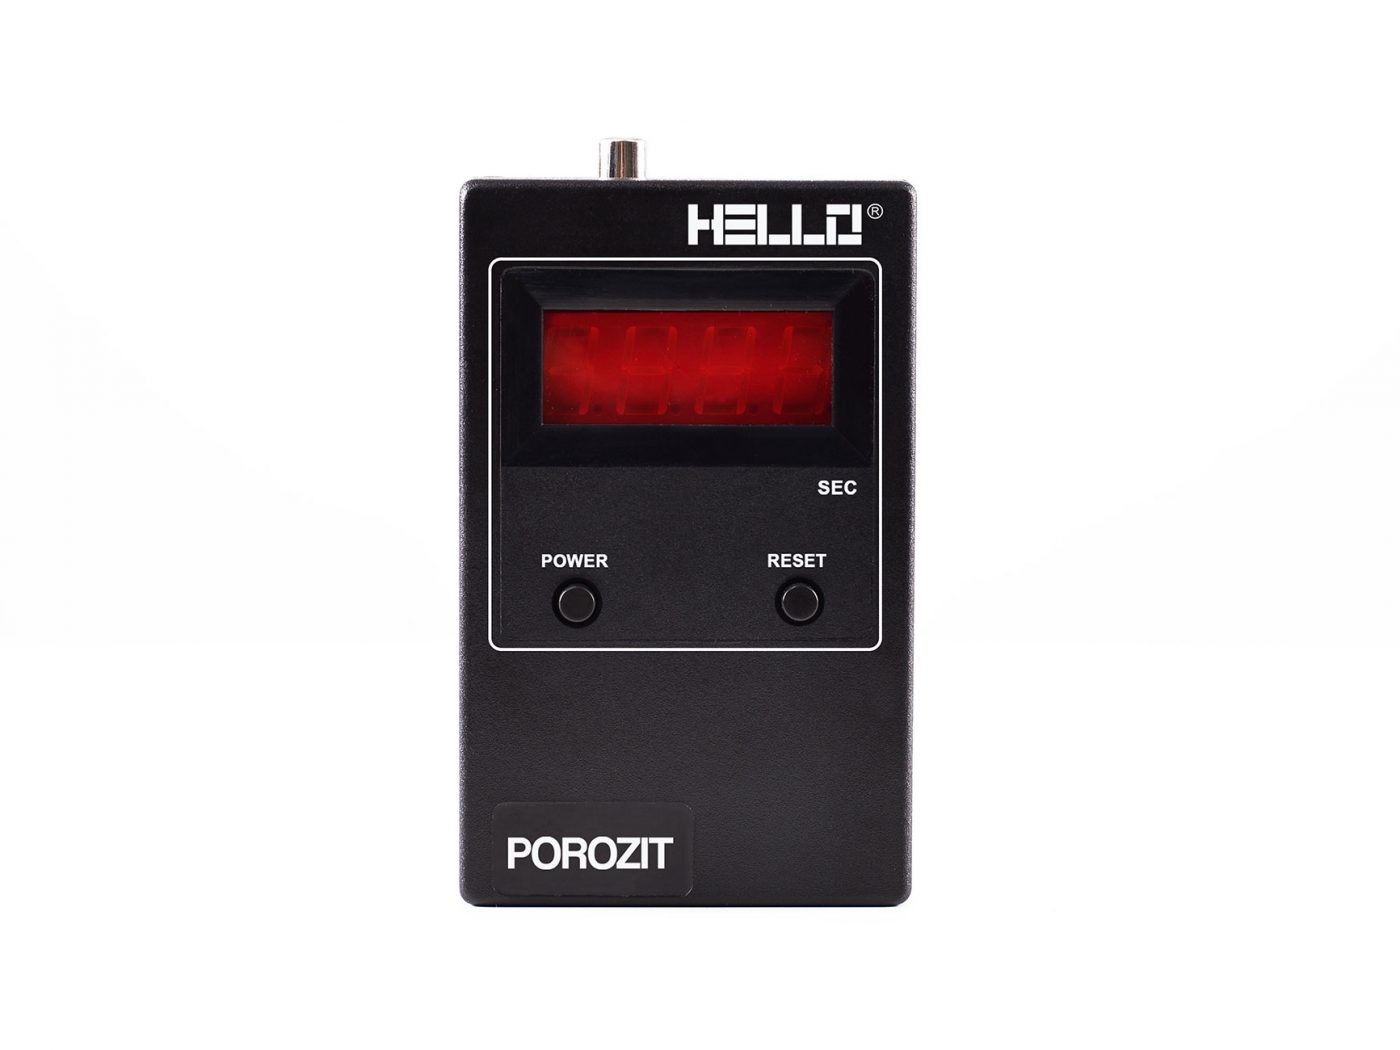 Hello Porozit | Porosity meter | Device